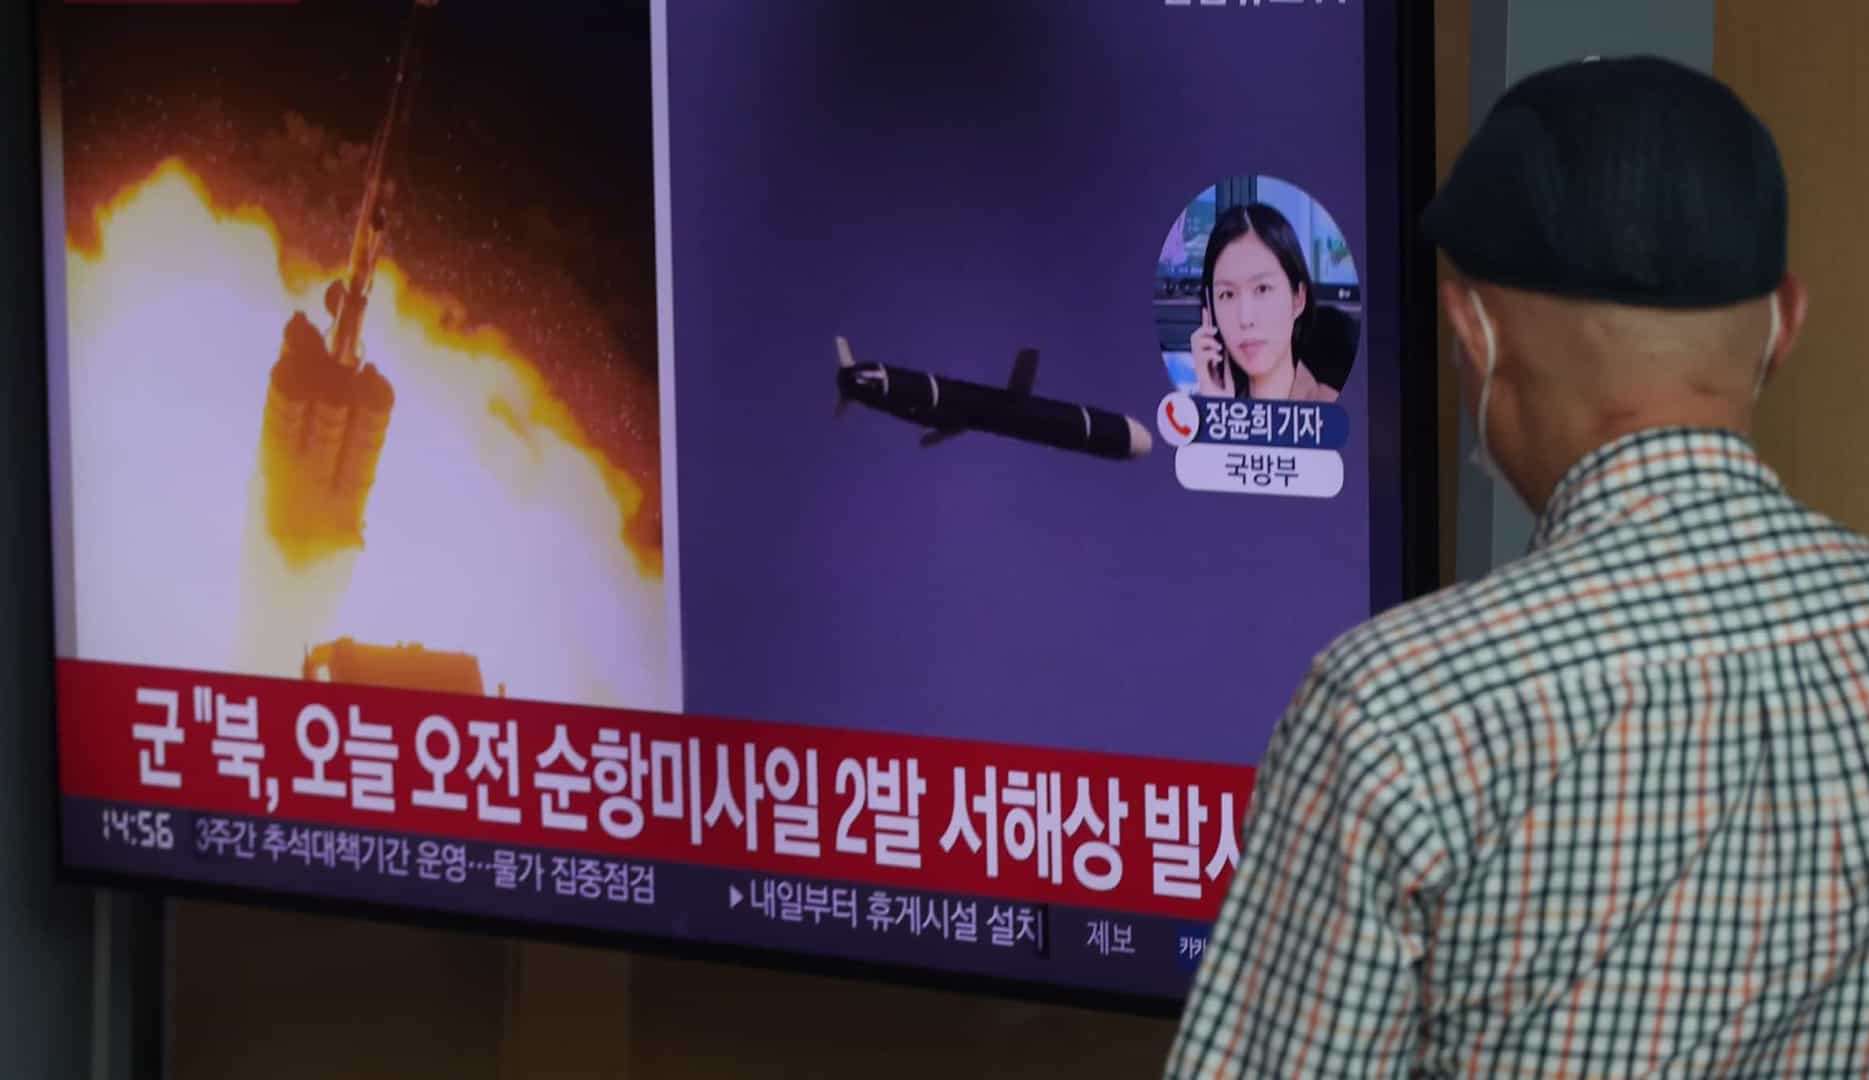 Segundo o Ministério da Defesa sul-coreano, dois mísseis foram disparados pela Coréia do Norte